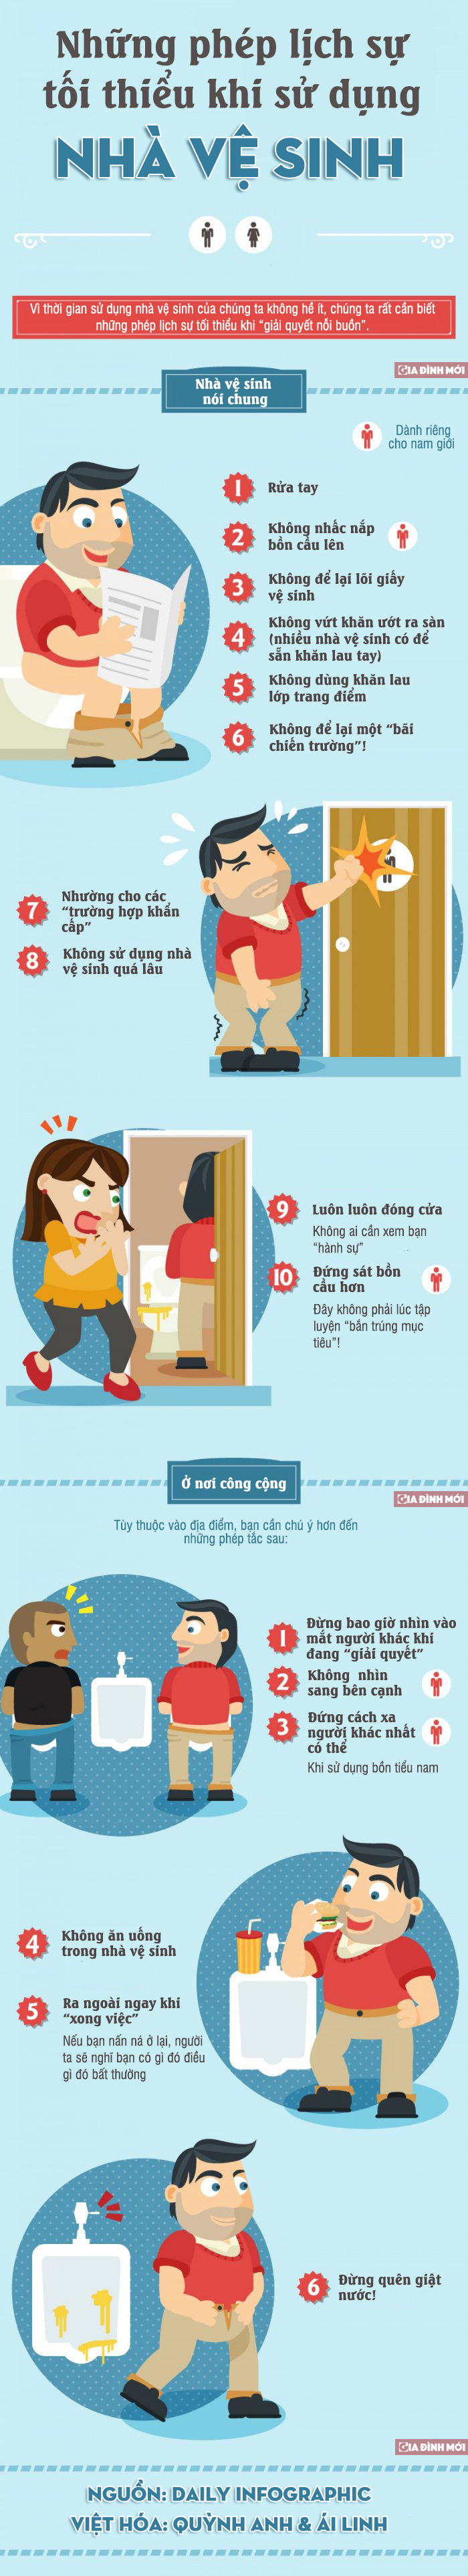 [Infographic] Những phép lịch sự tối thiểu khi sử dụng nhà vệ sinh 0